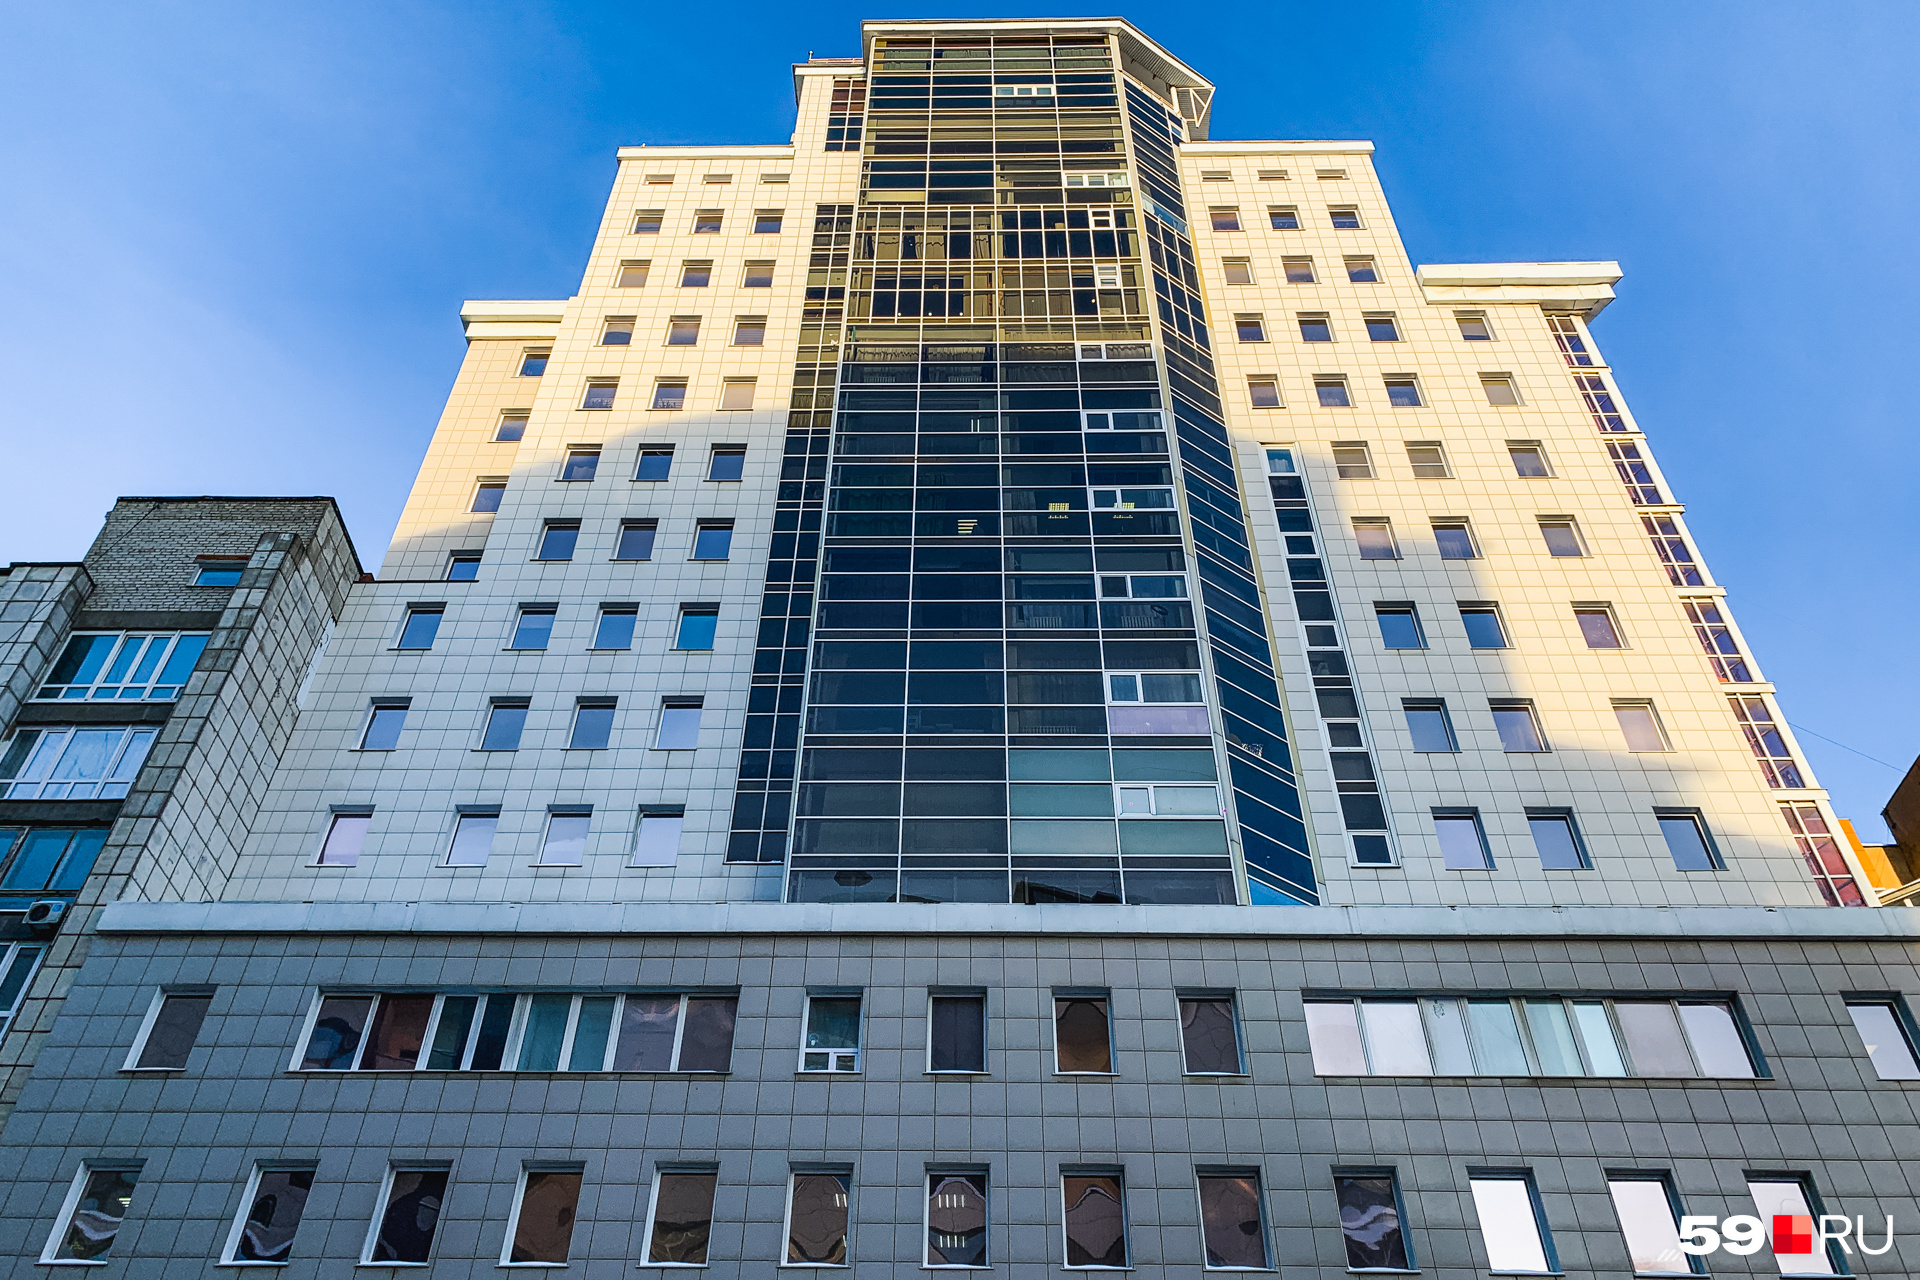 Здание высотой 18 этажей находится в двух кварталах от эспланады — на Екатерининской, 122